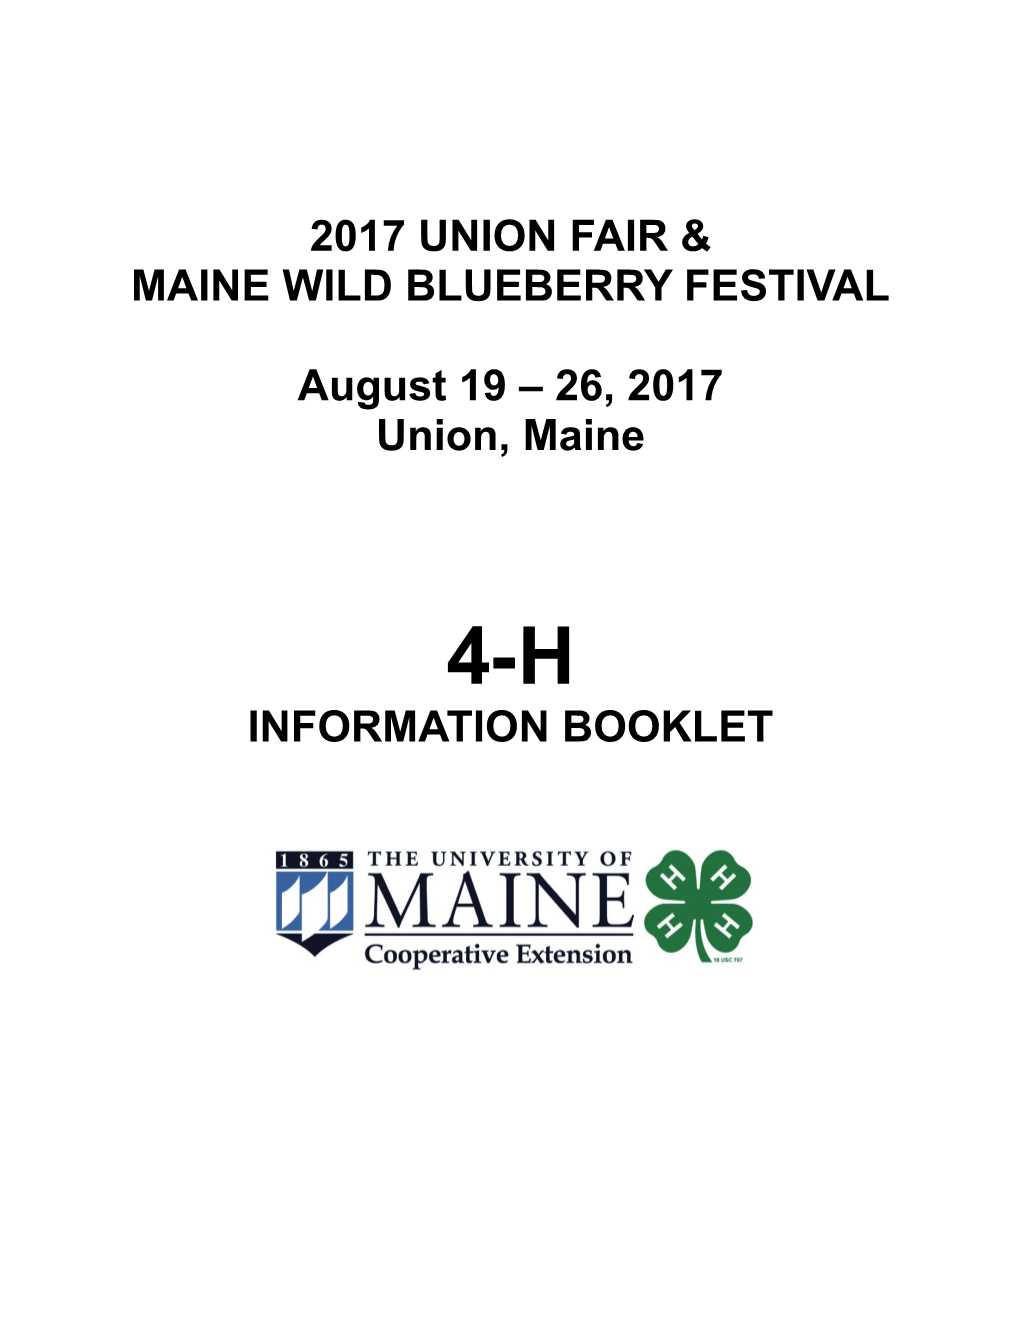 2017 Union Fair & Maine Wild Blueberry Festival